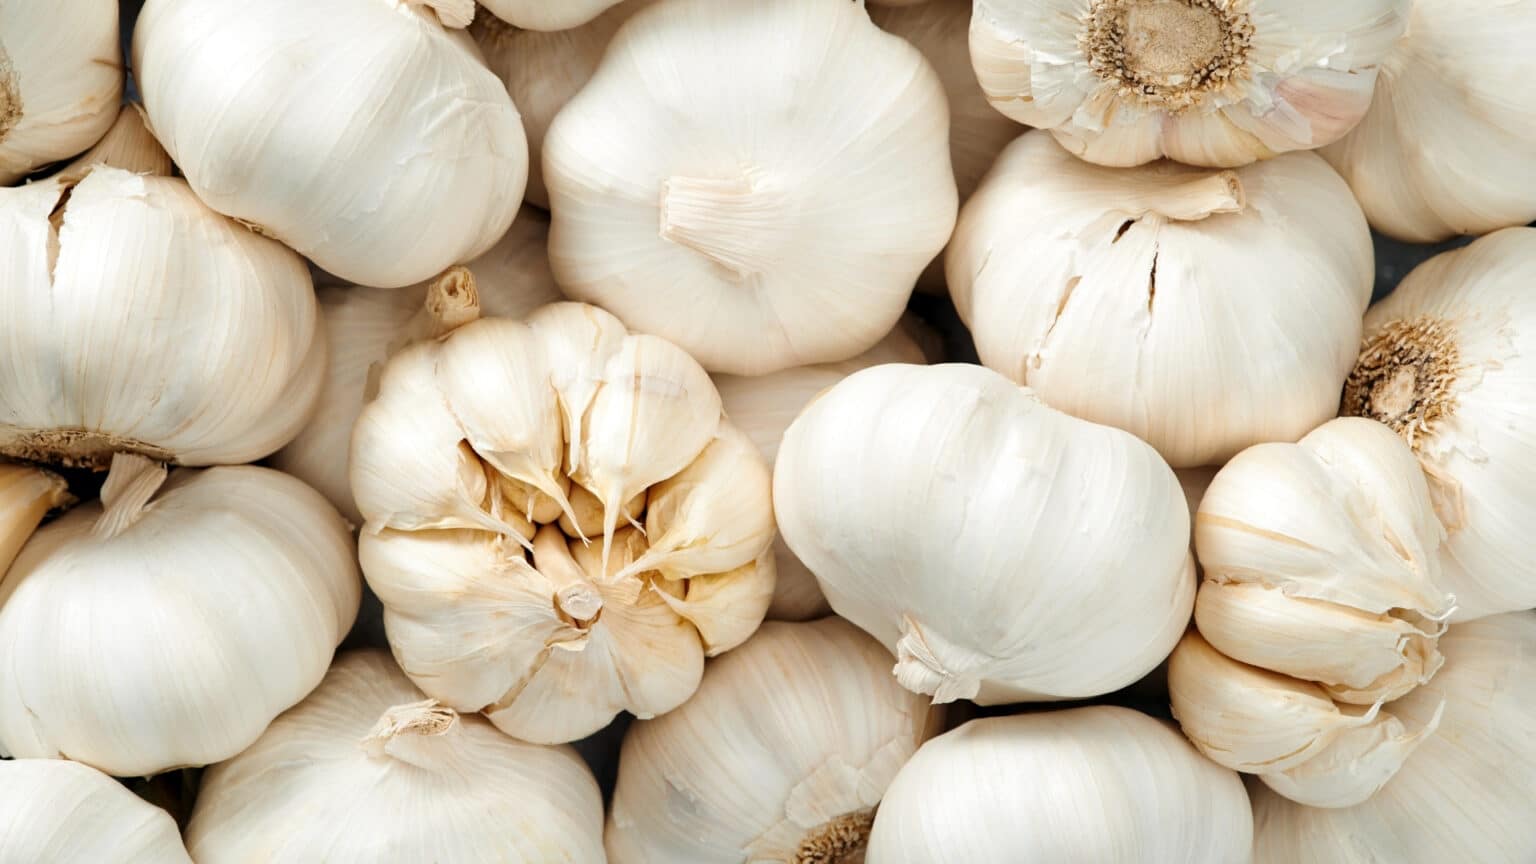 Types of Garlic Grinders